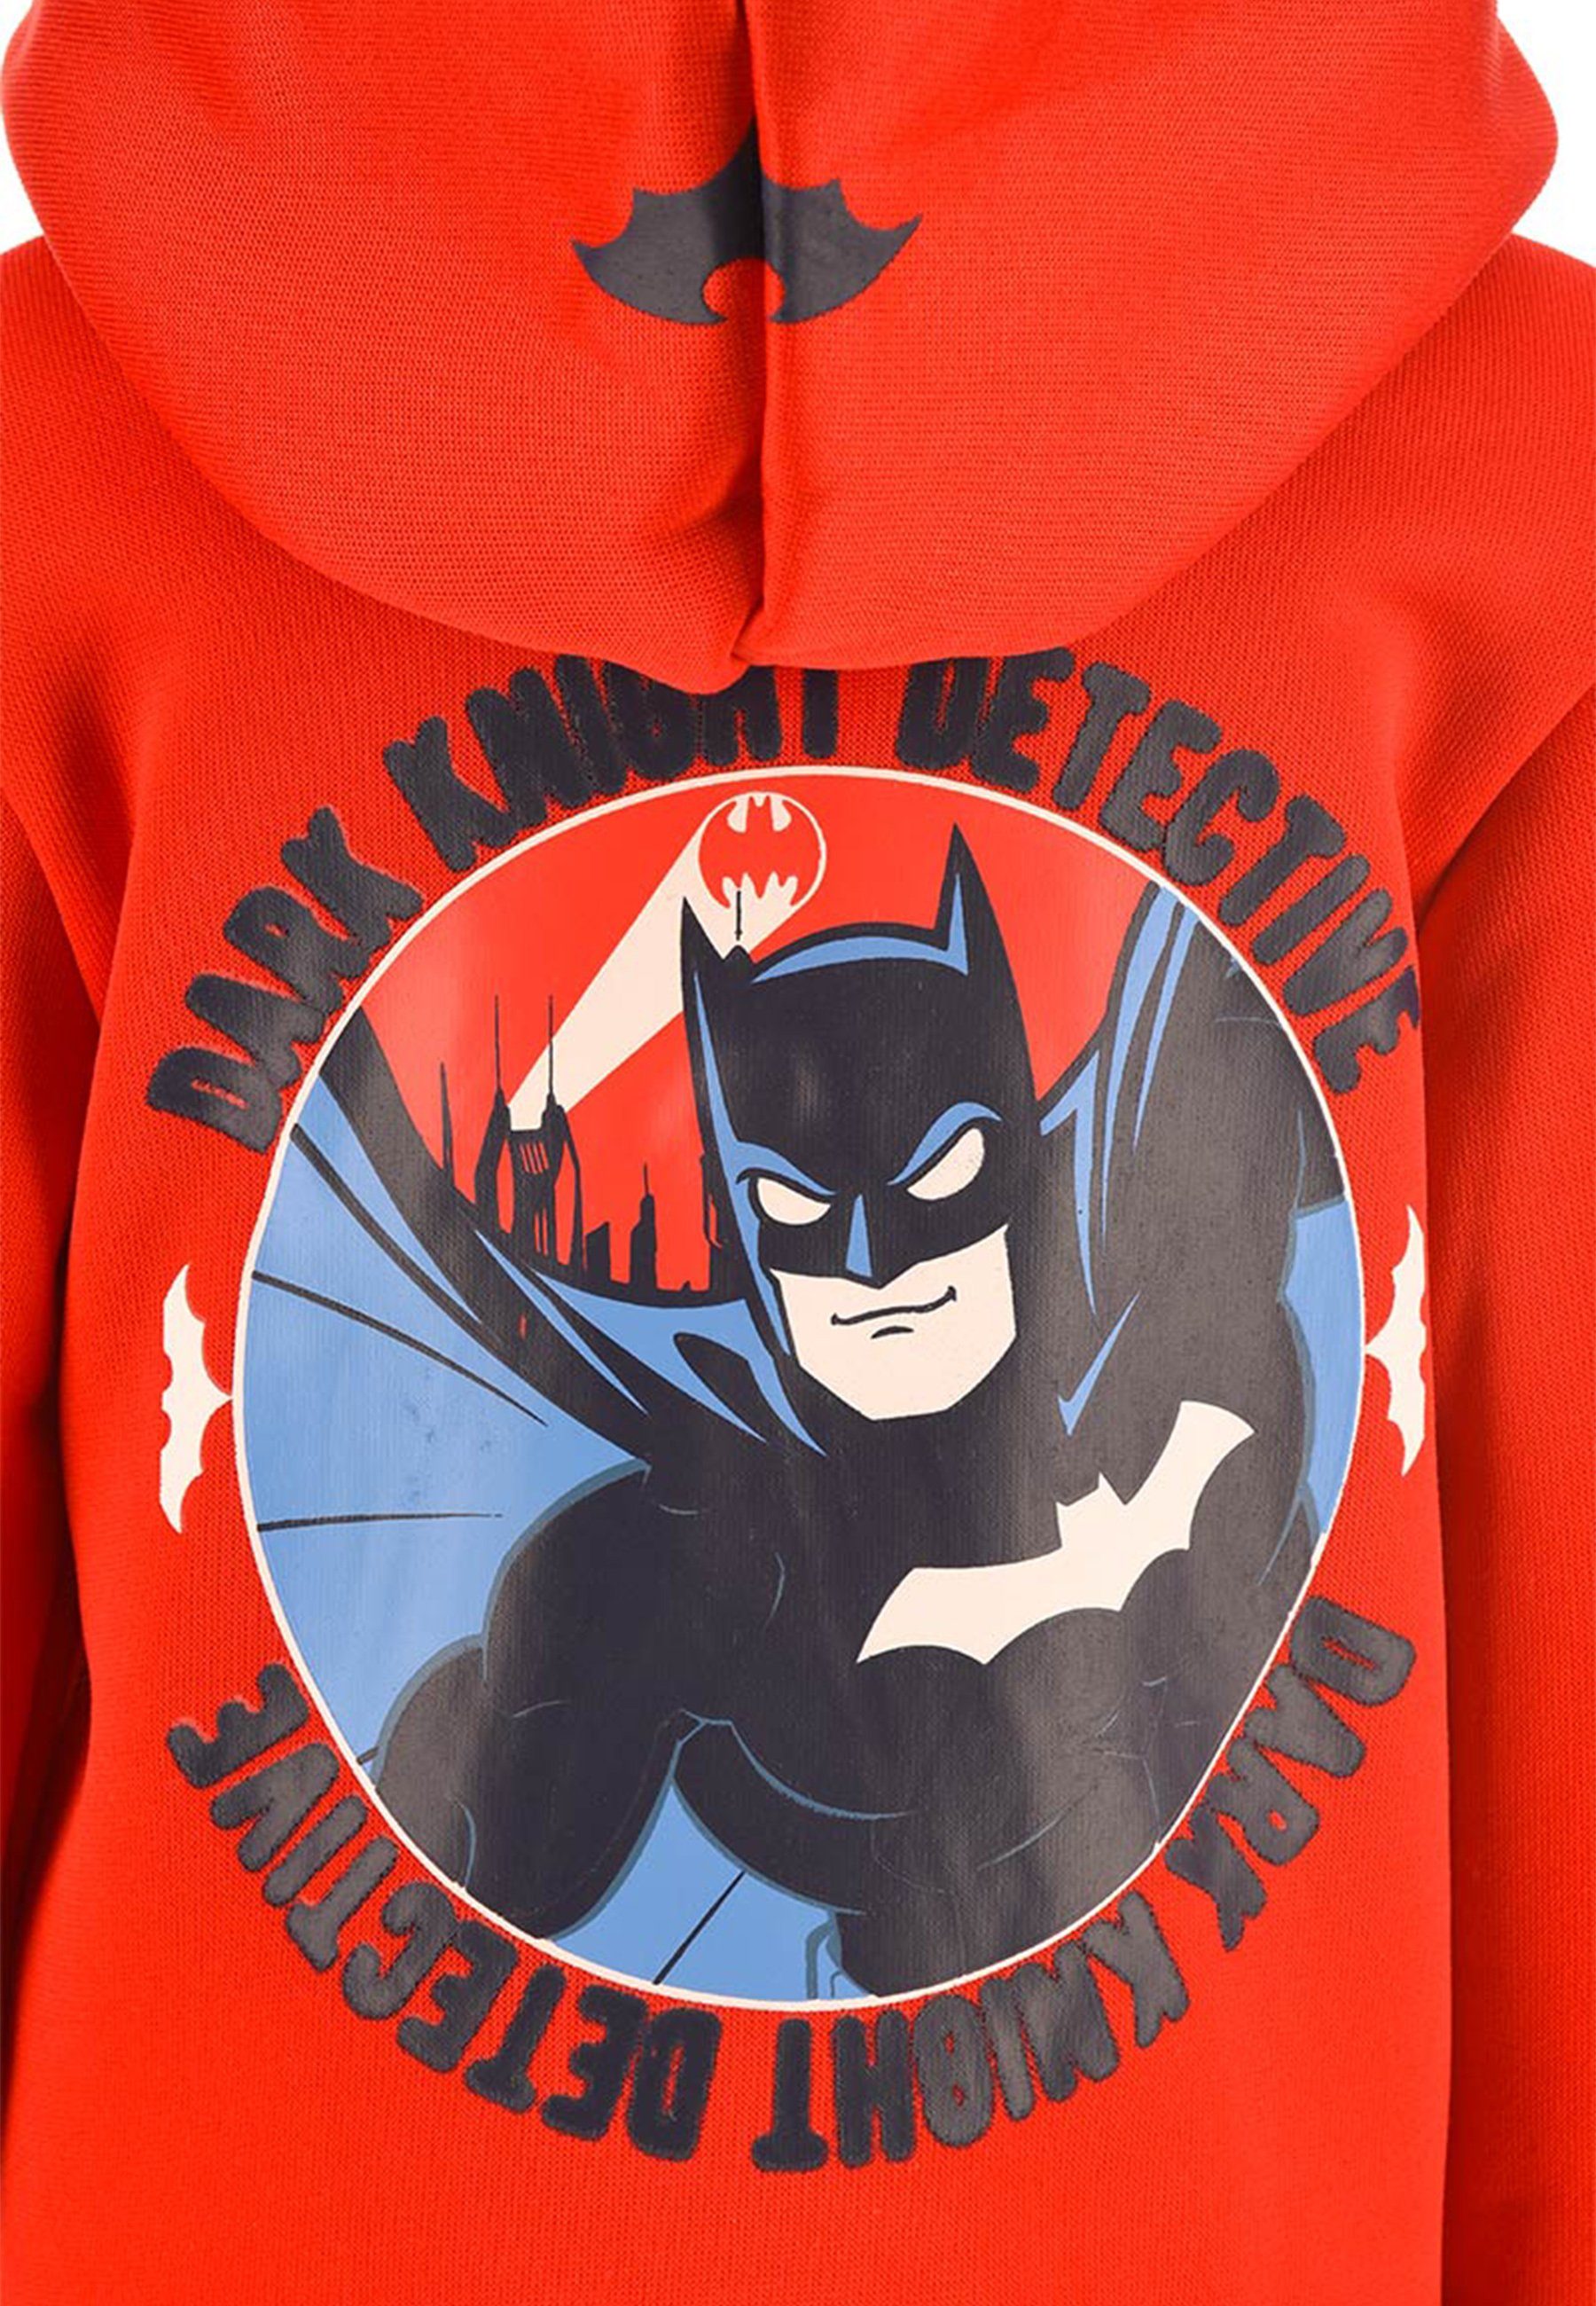 Knight Batman Hoodie Pullover-Jacke Reißverschluss Dirk Kapuzenjacke Rot Sweatjacke Kapuze Kapuzensweatjacke